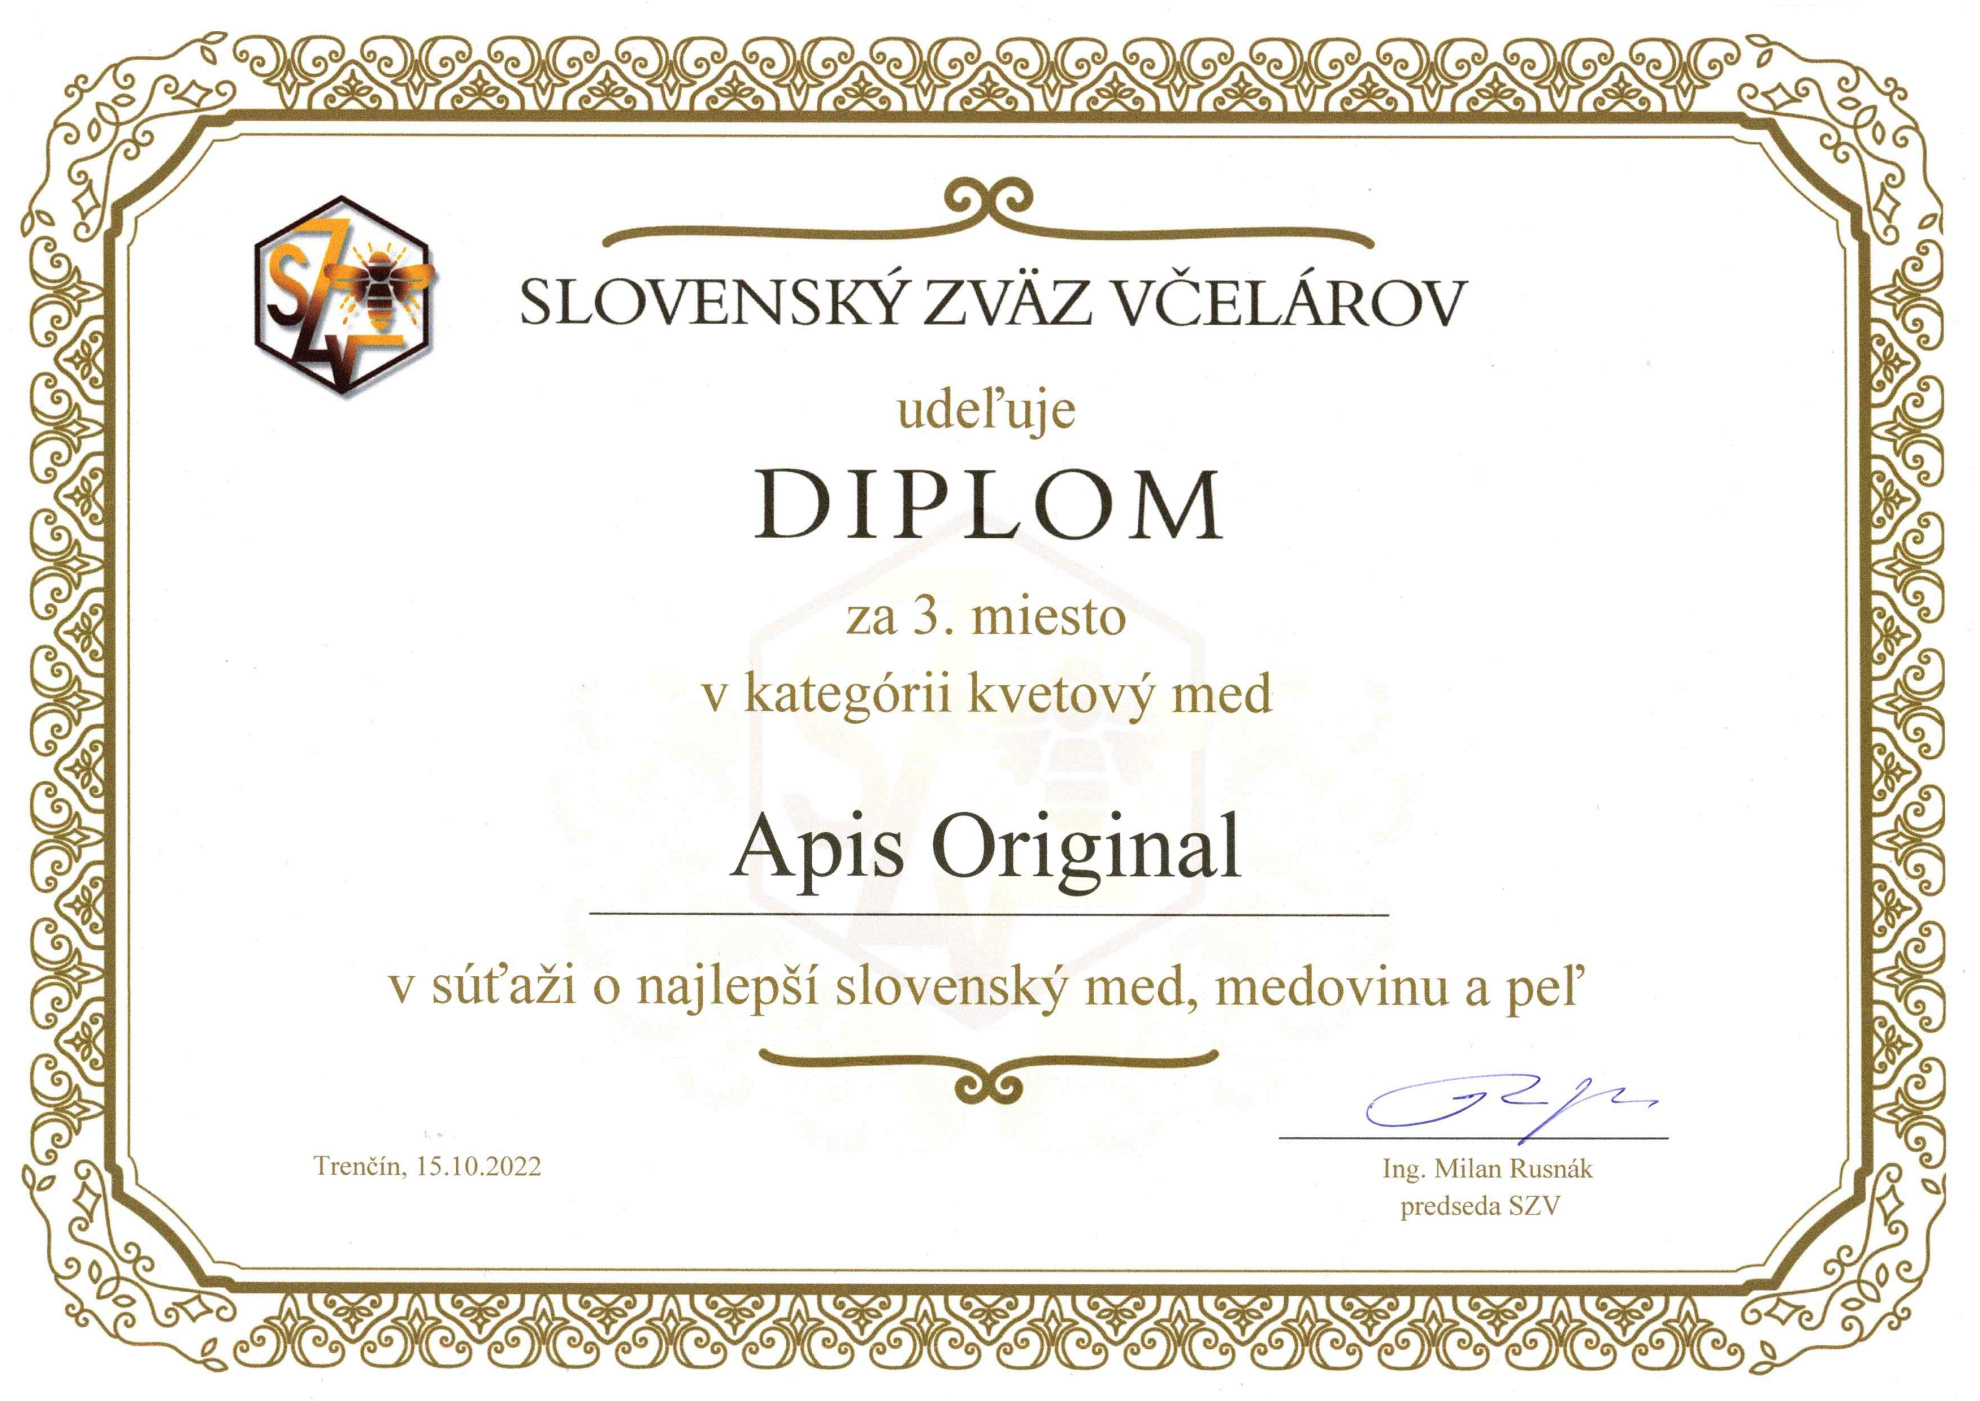 Diplom za 3. miesto v kategórii kvetový med v súťaži o najlepší kvetový med na Slovensku v roku 2022 organizovaný Slovenským zväzom včelárov (SZV)